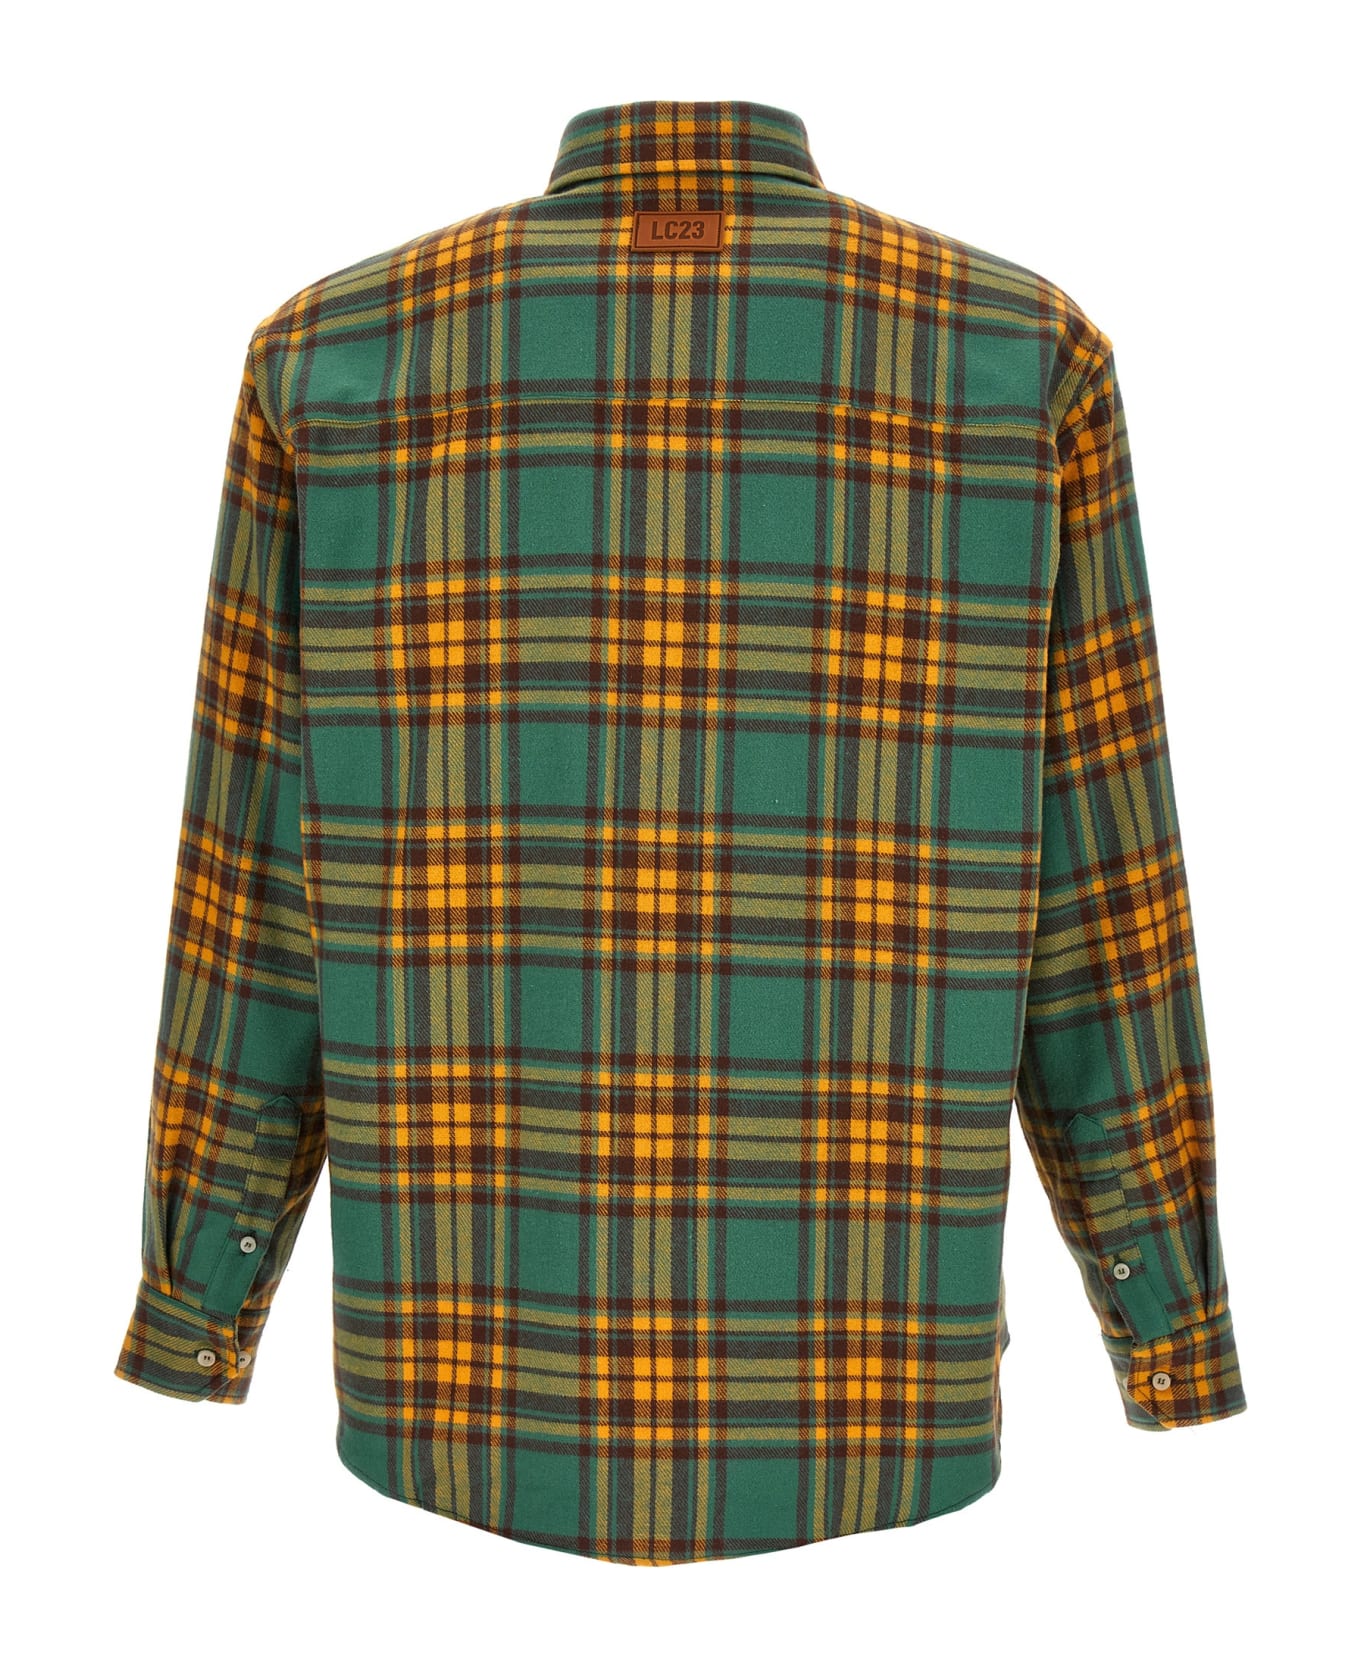 LC23 'check Flannel' Shirt - Multicolor